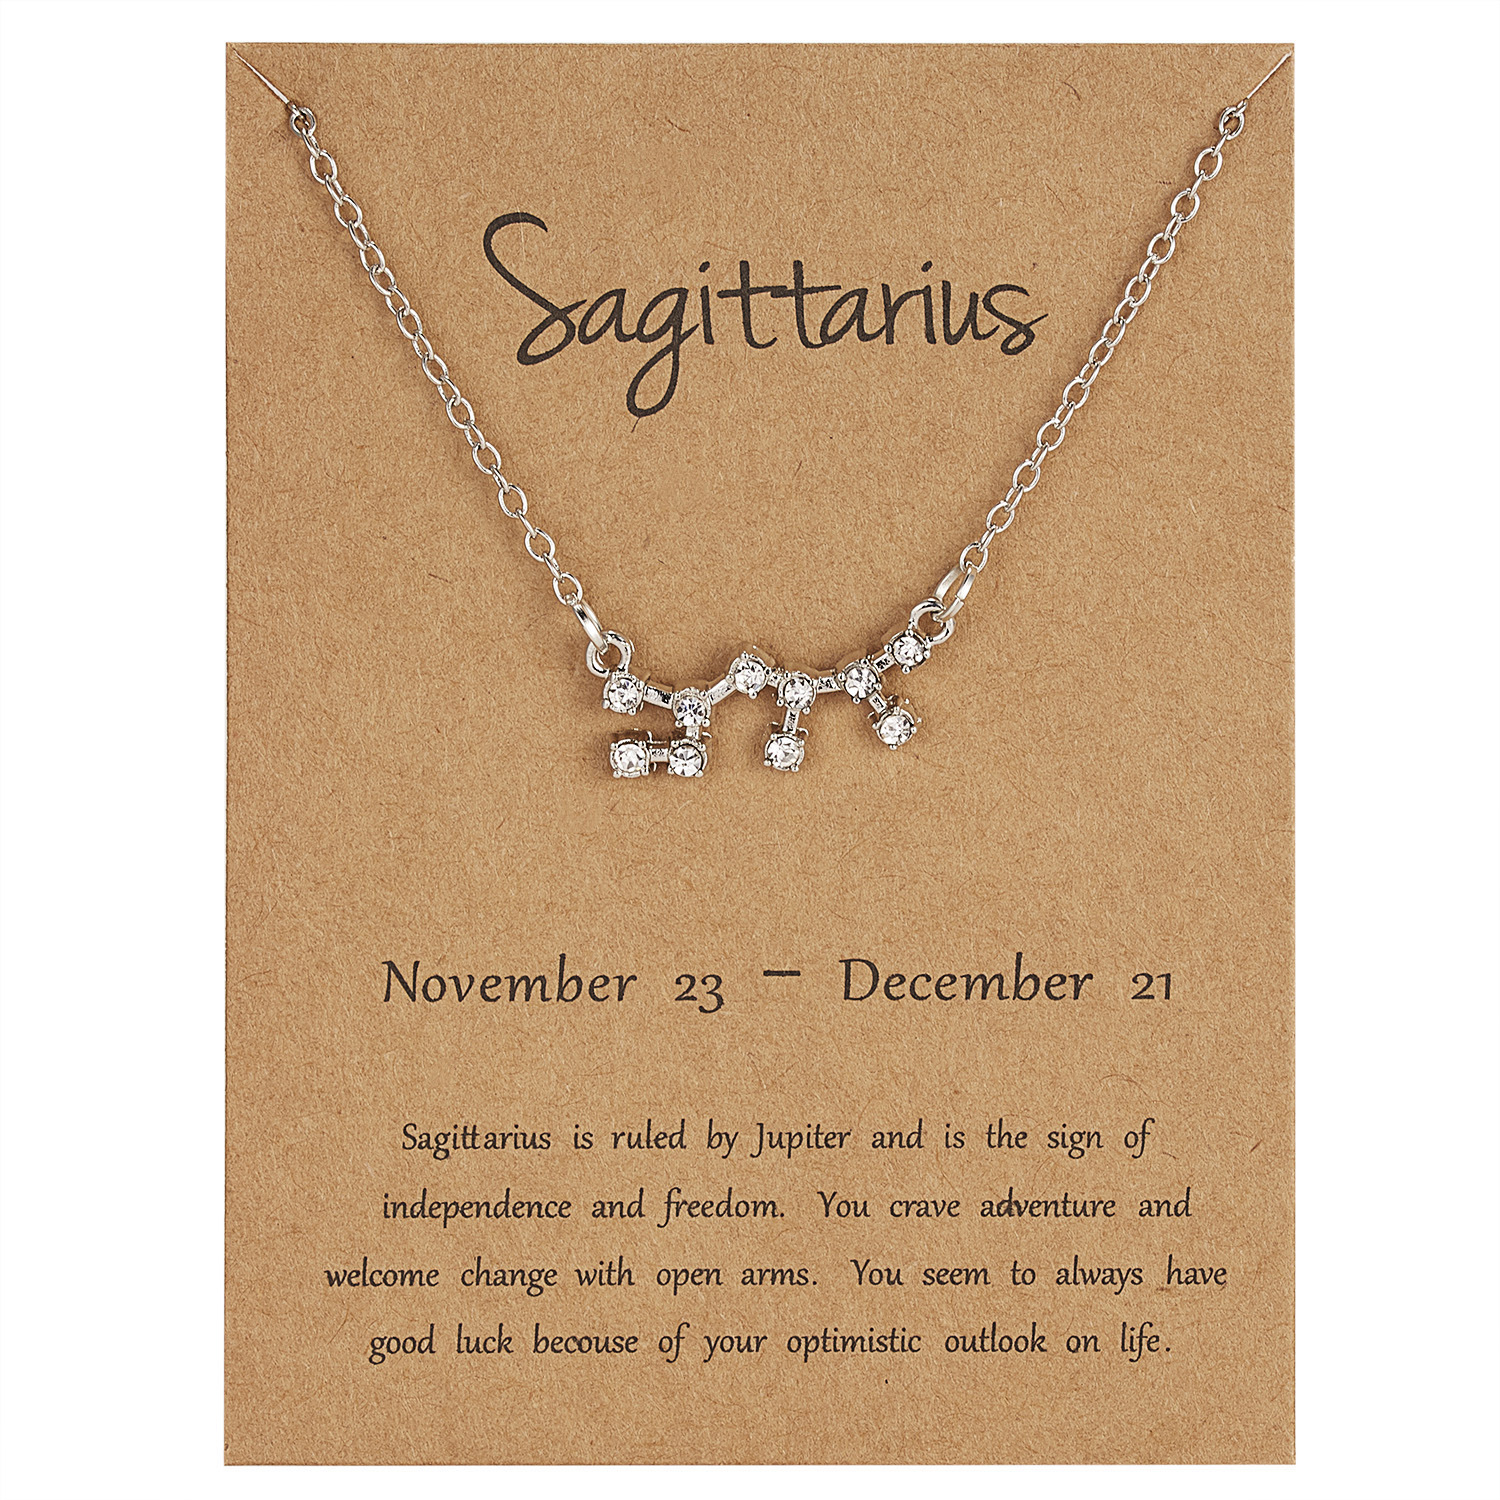 11:Sagittarius